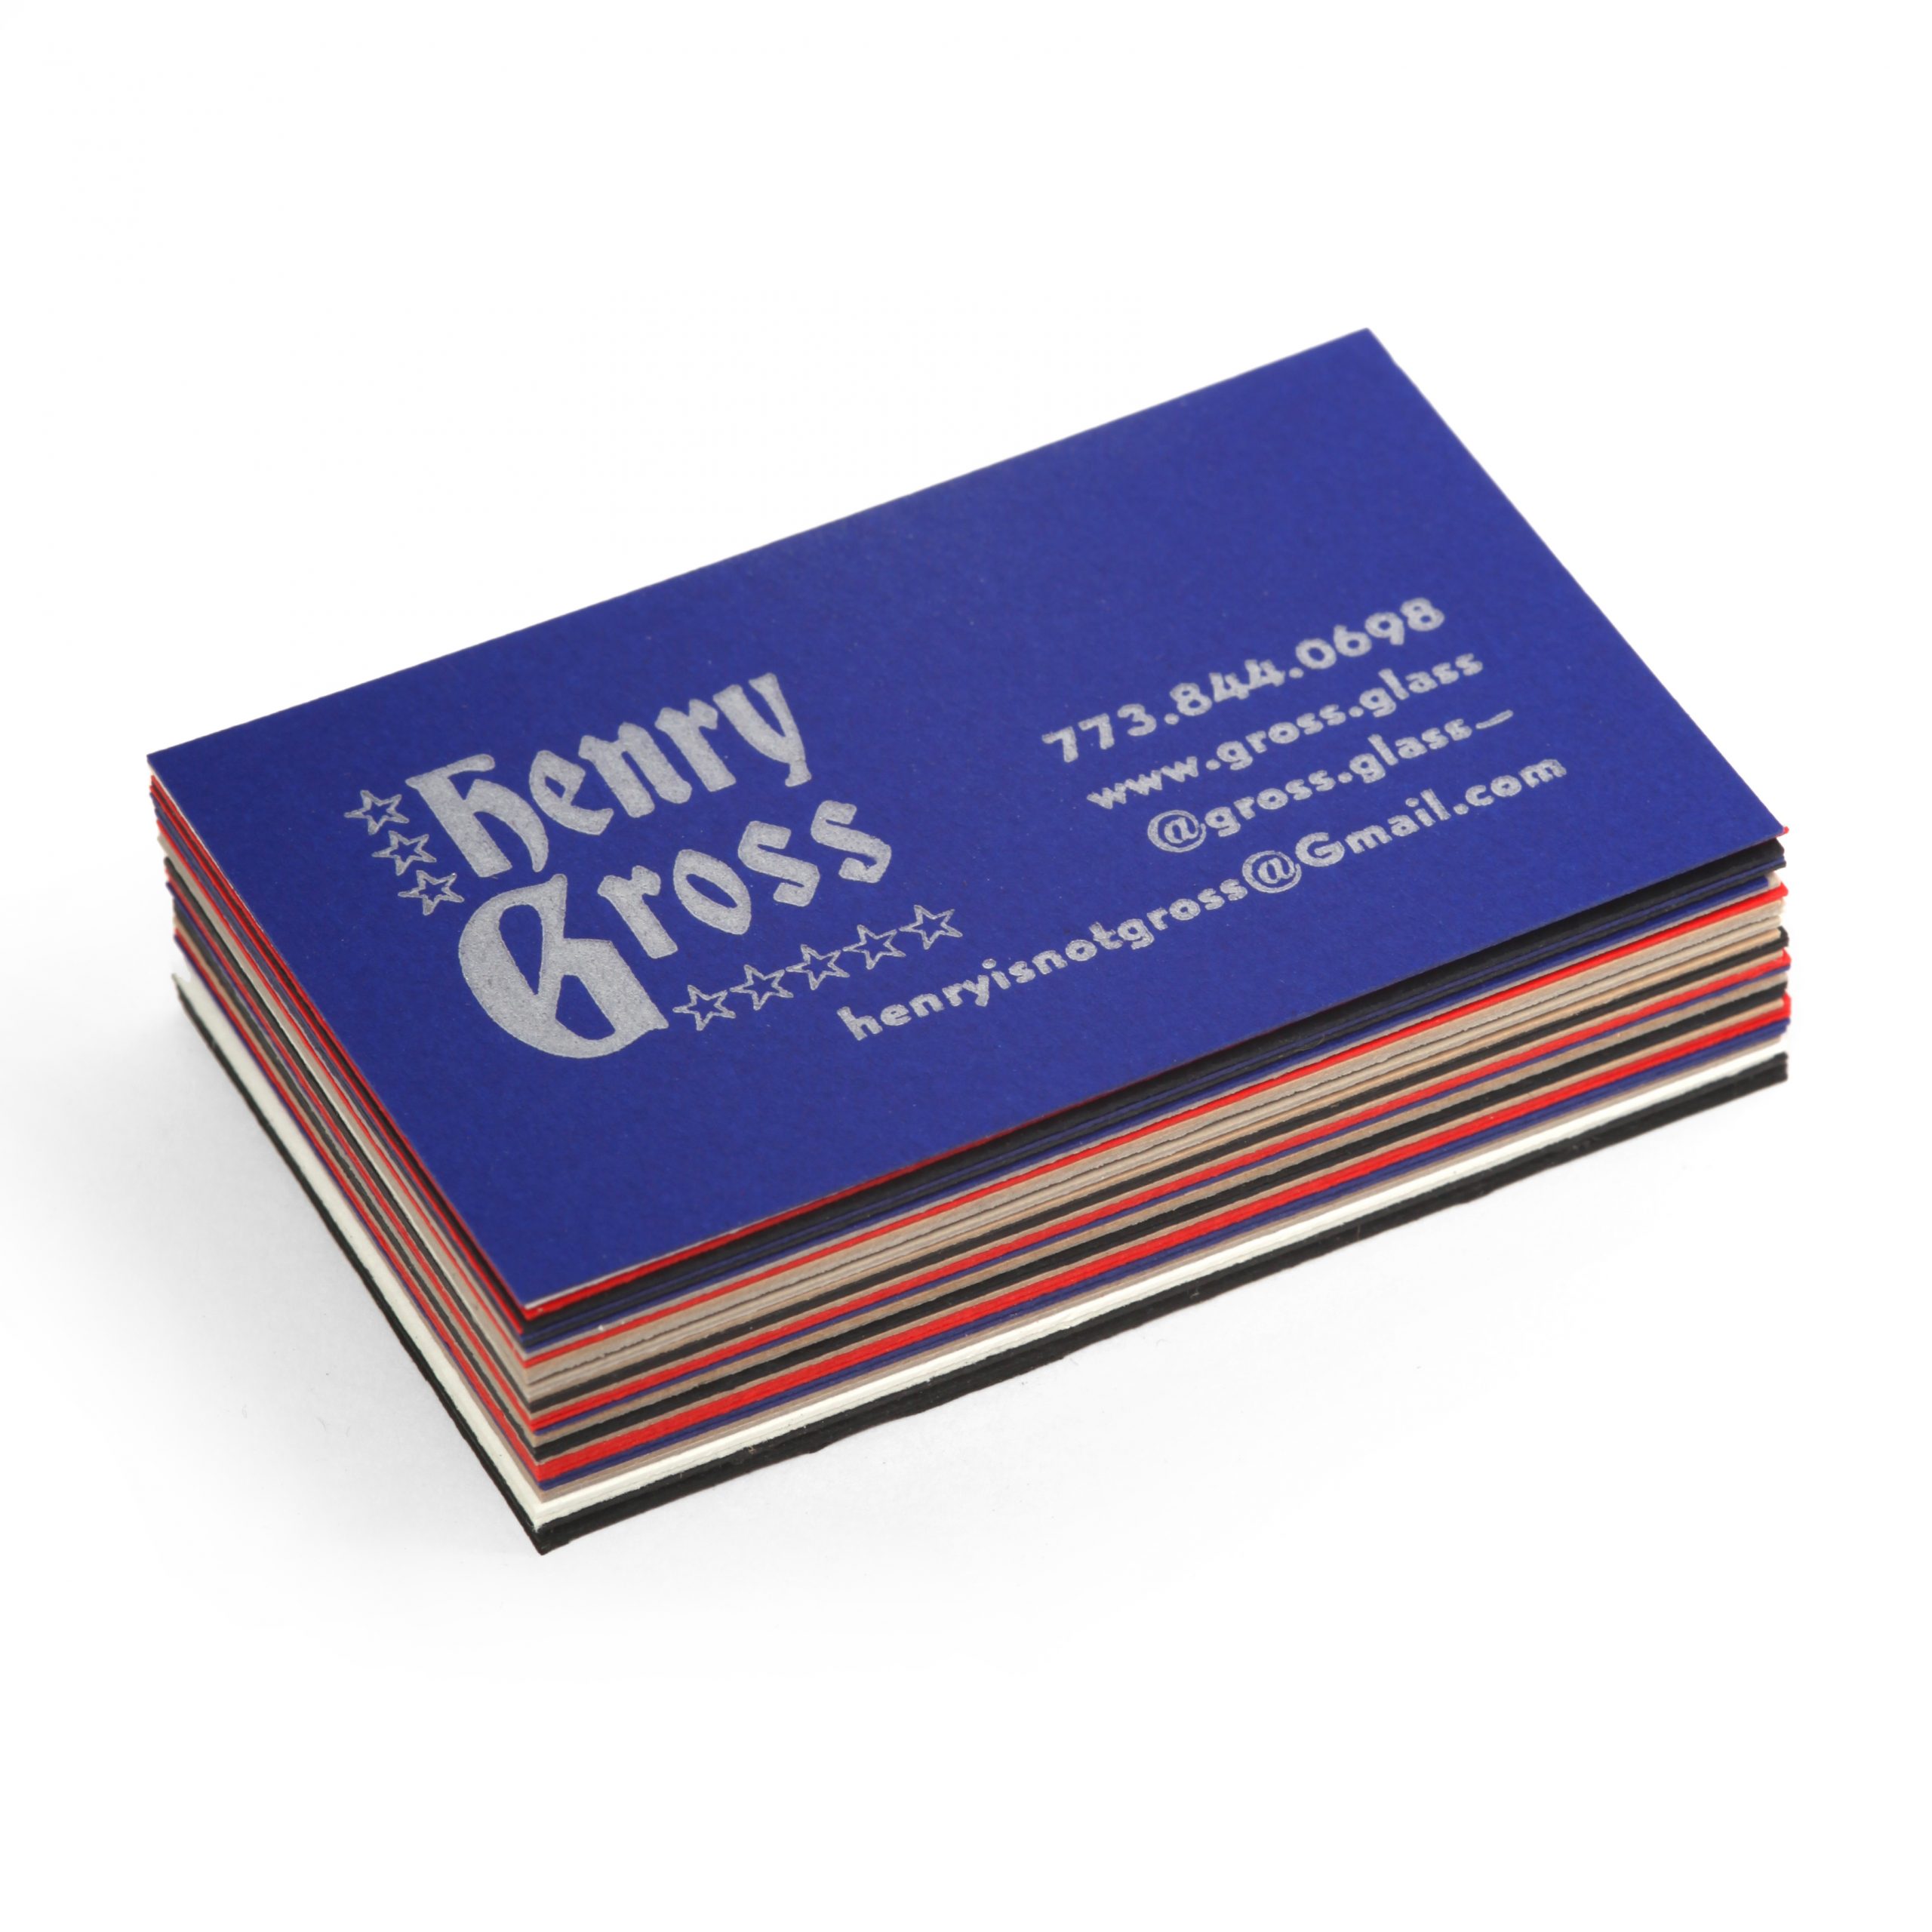 150Gross Glass business cards